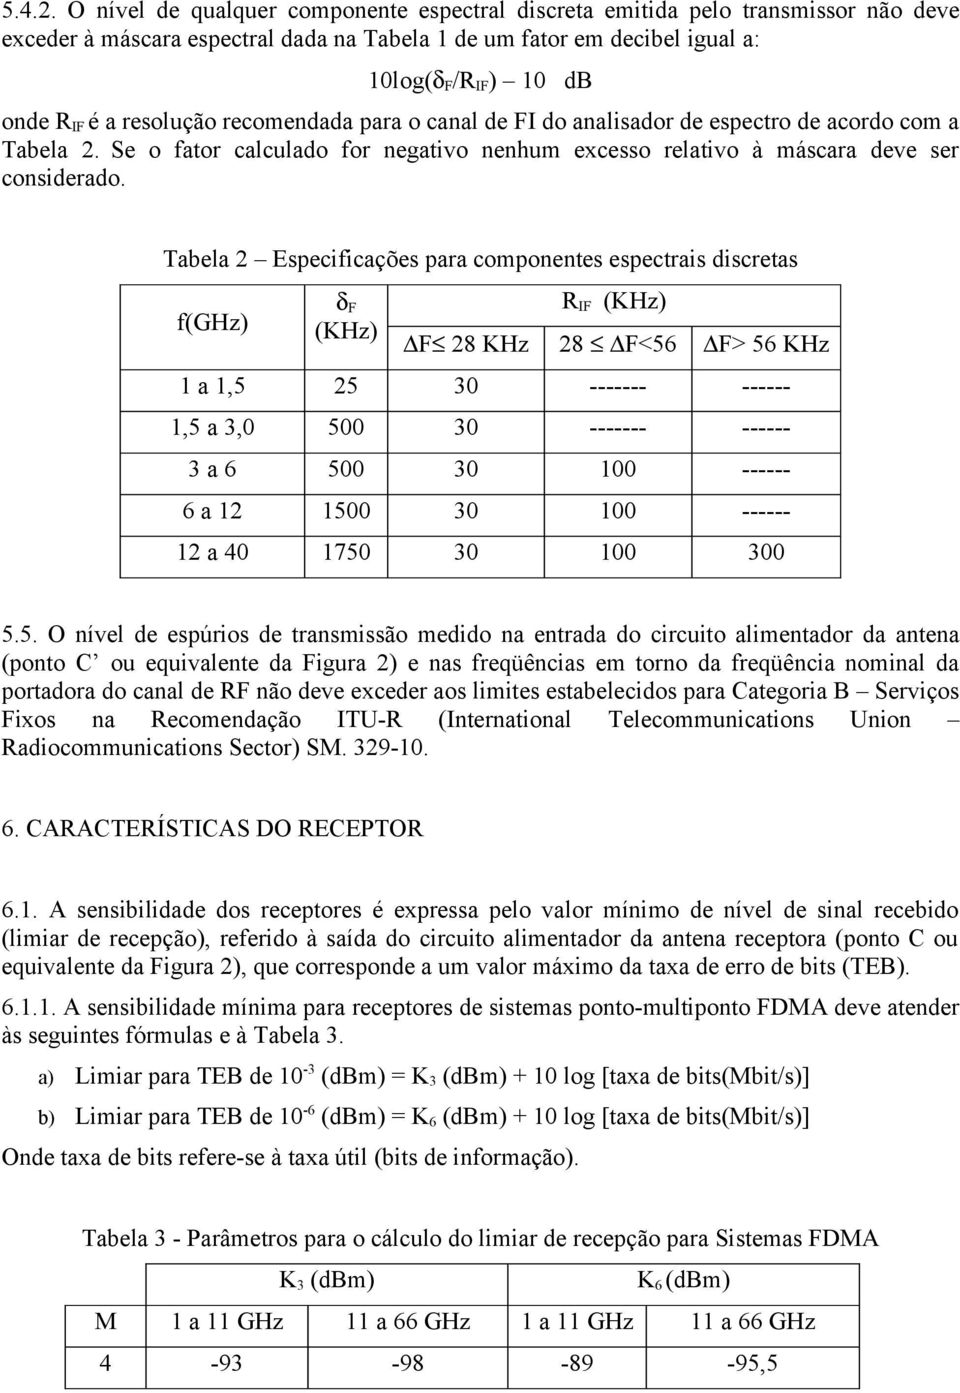 resolução recomendada para o canal de FI do analisador de espectro de acordo com a Tabela 2. Se o fator calculado for negativo nenhum excesso relativo à máscara deve ser considerado.